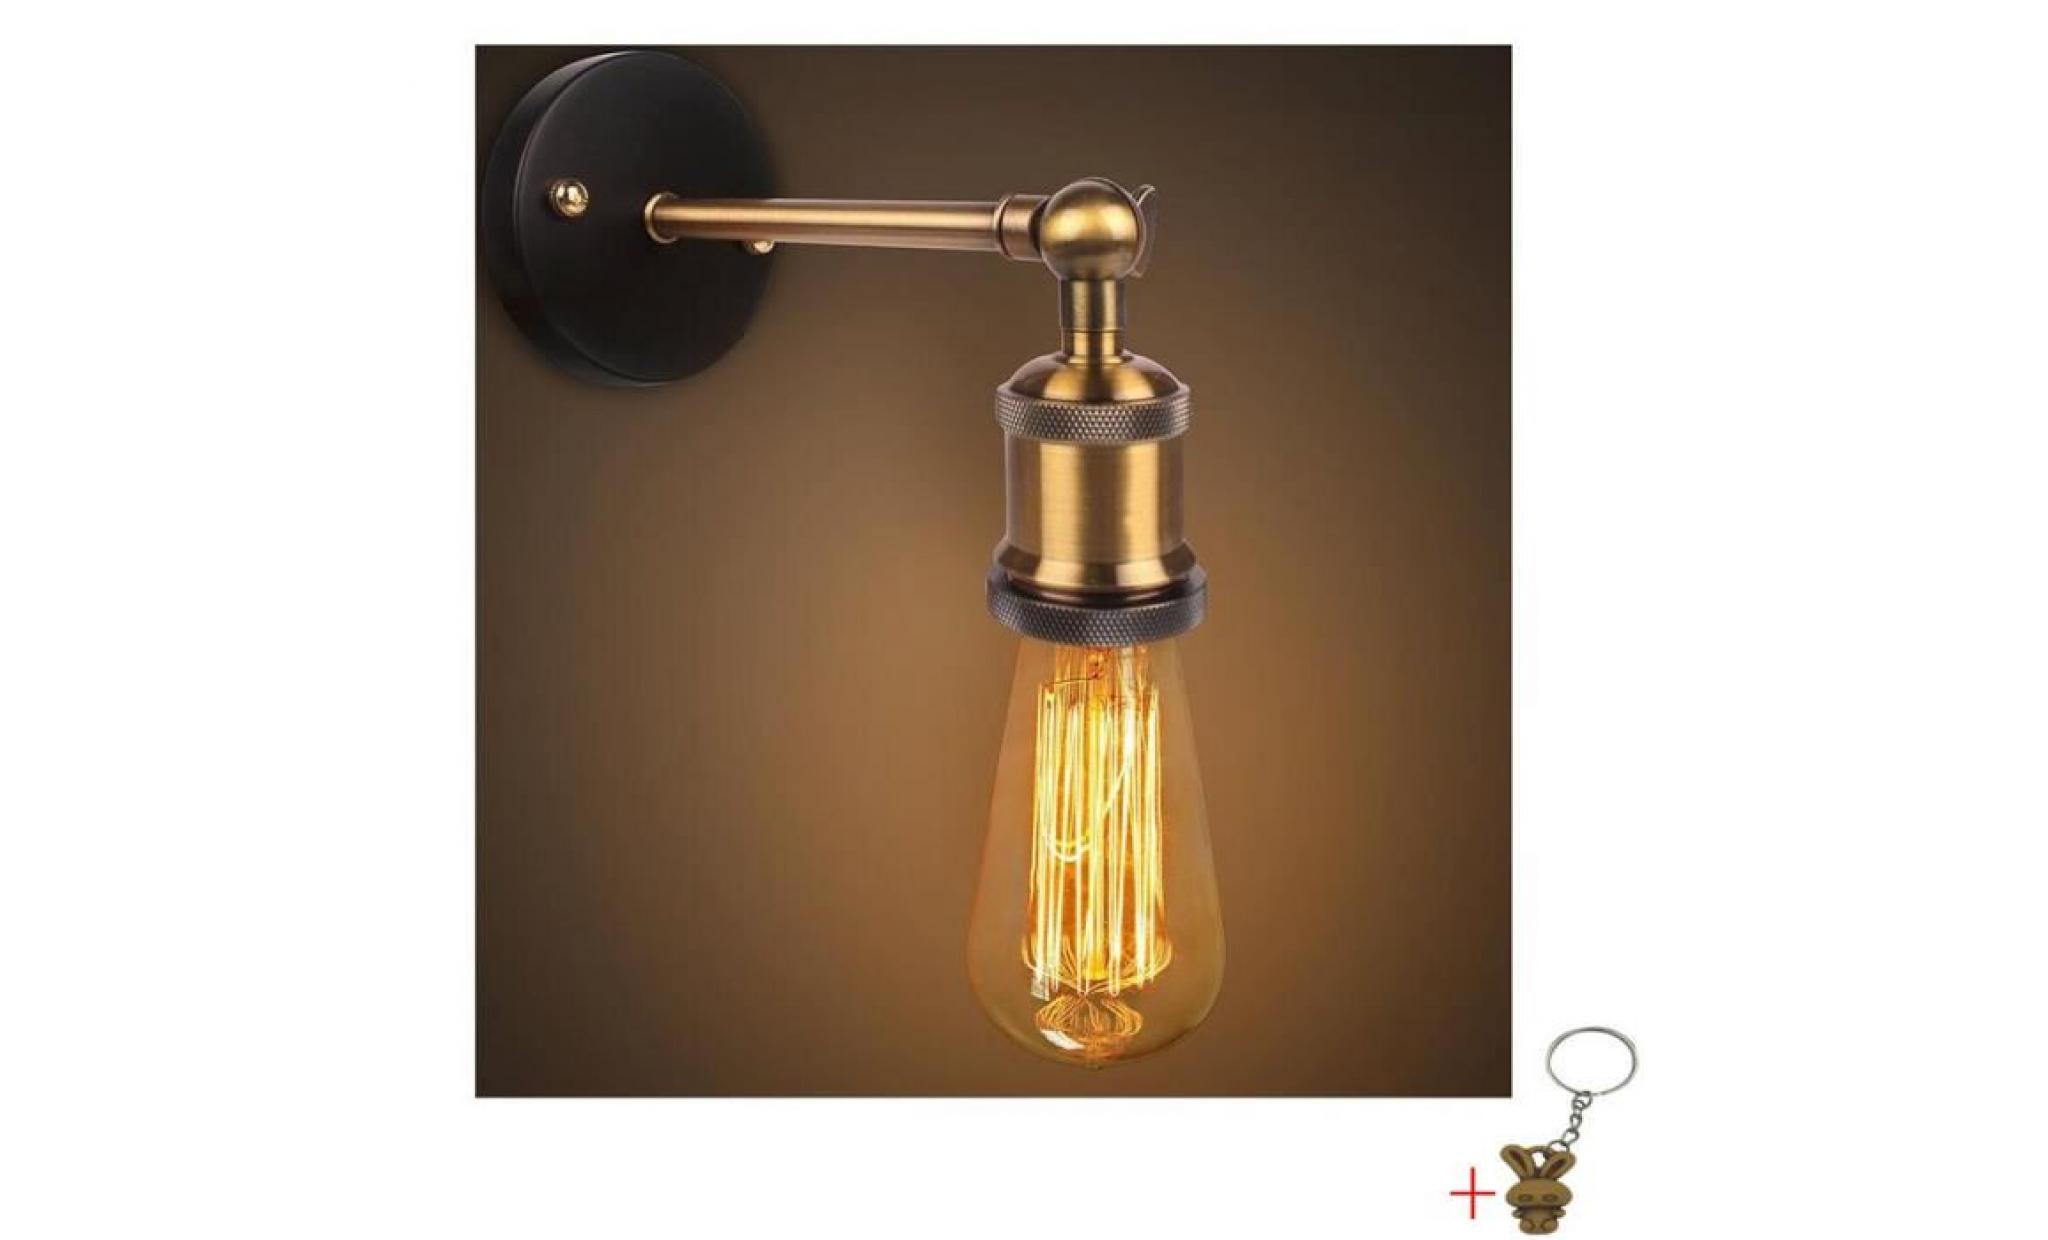 e27 applique lampe retro edison lampe murale applique finition de laiton eclairage industriel vintage +cadeau porte clés